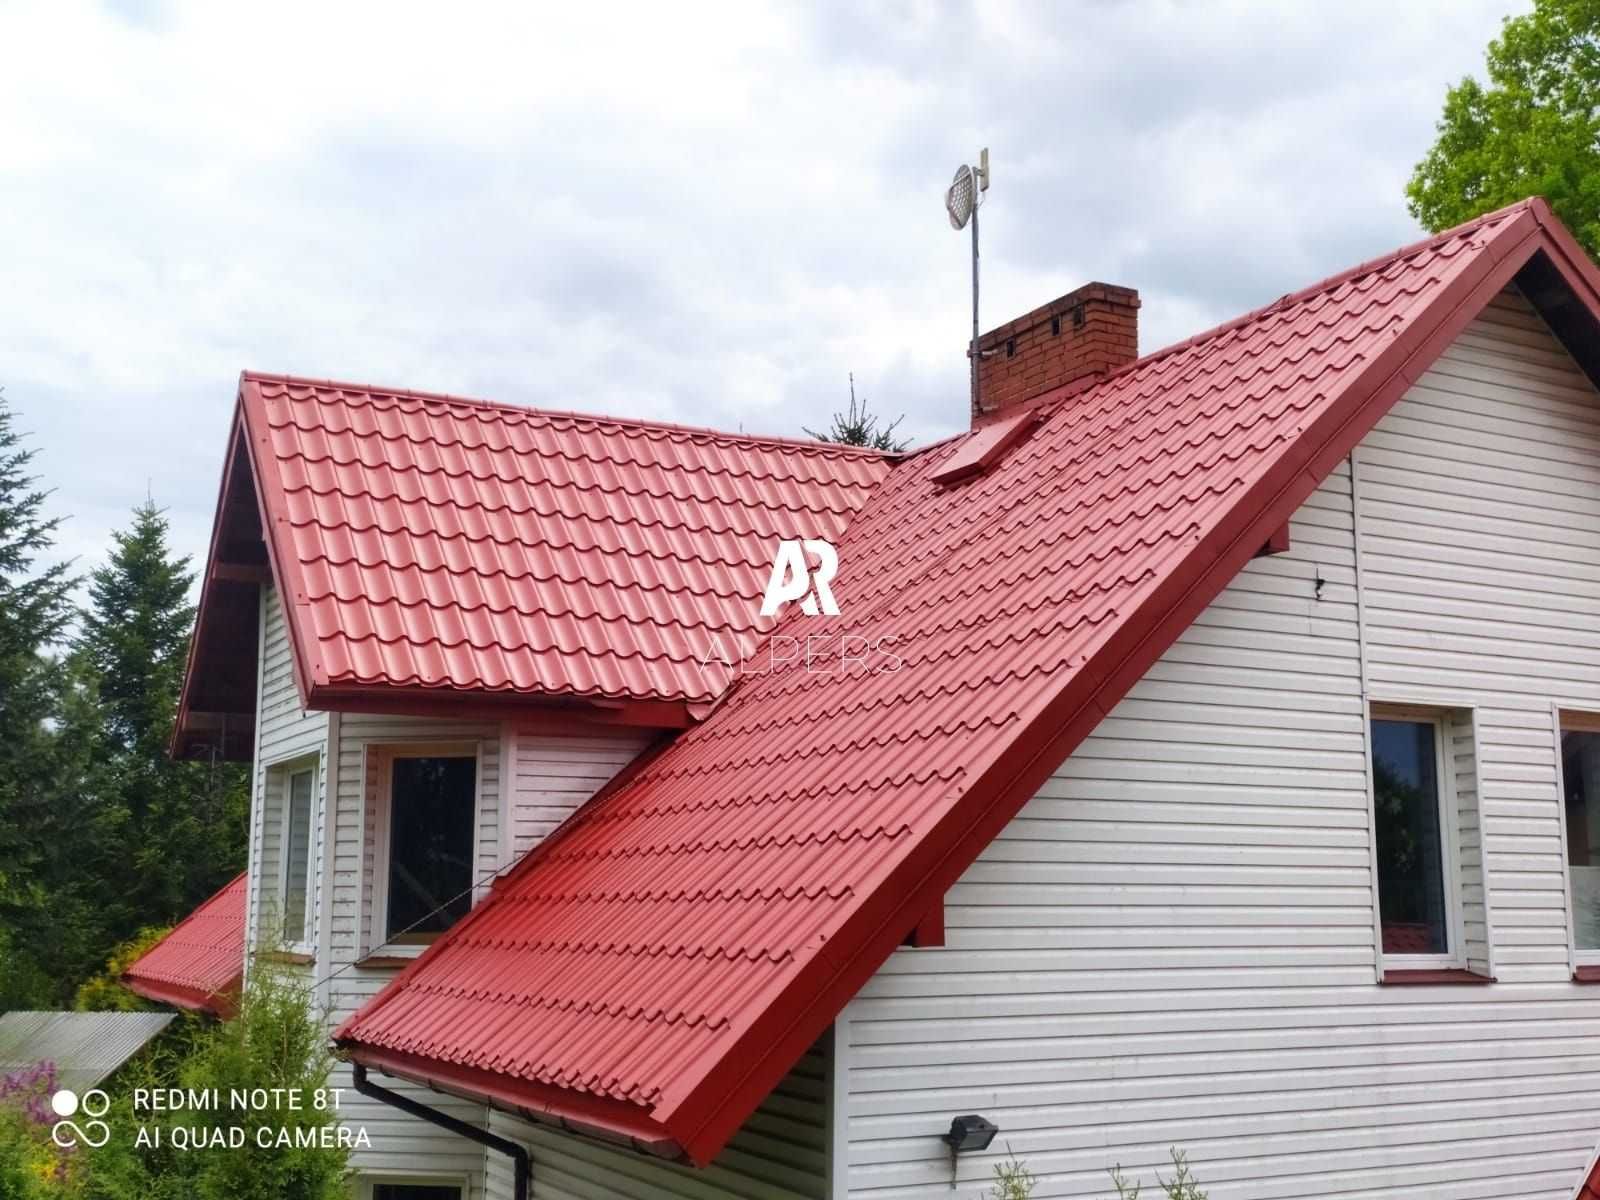 Mycie Malowanie Dachów Elewacji Czyszczenie kostki brukowej rynien